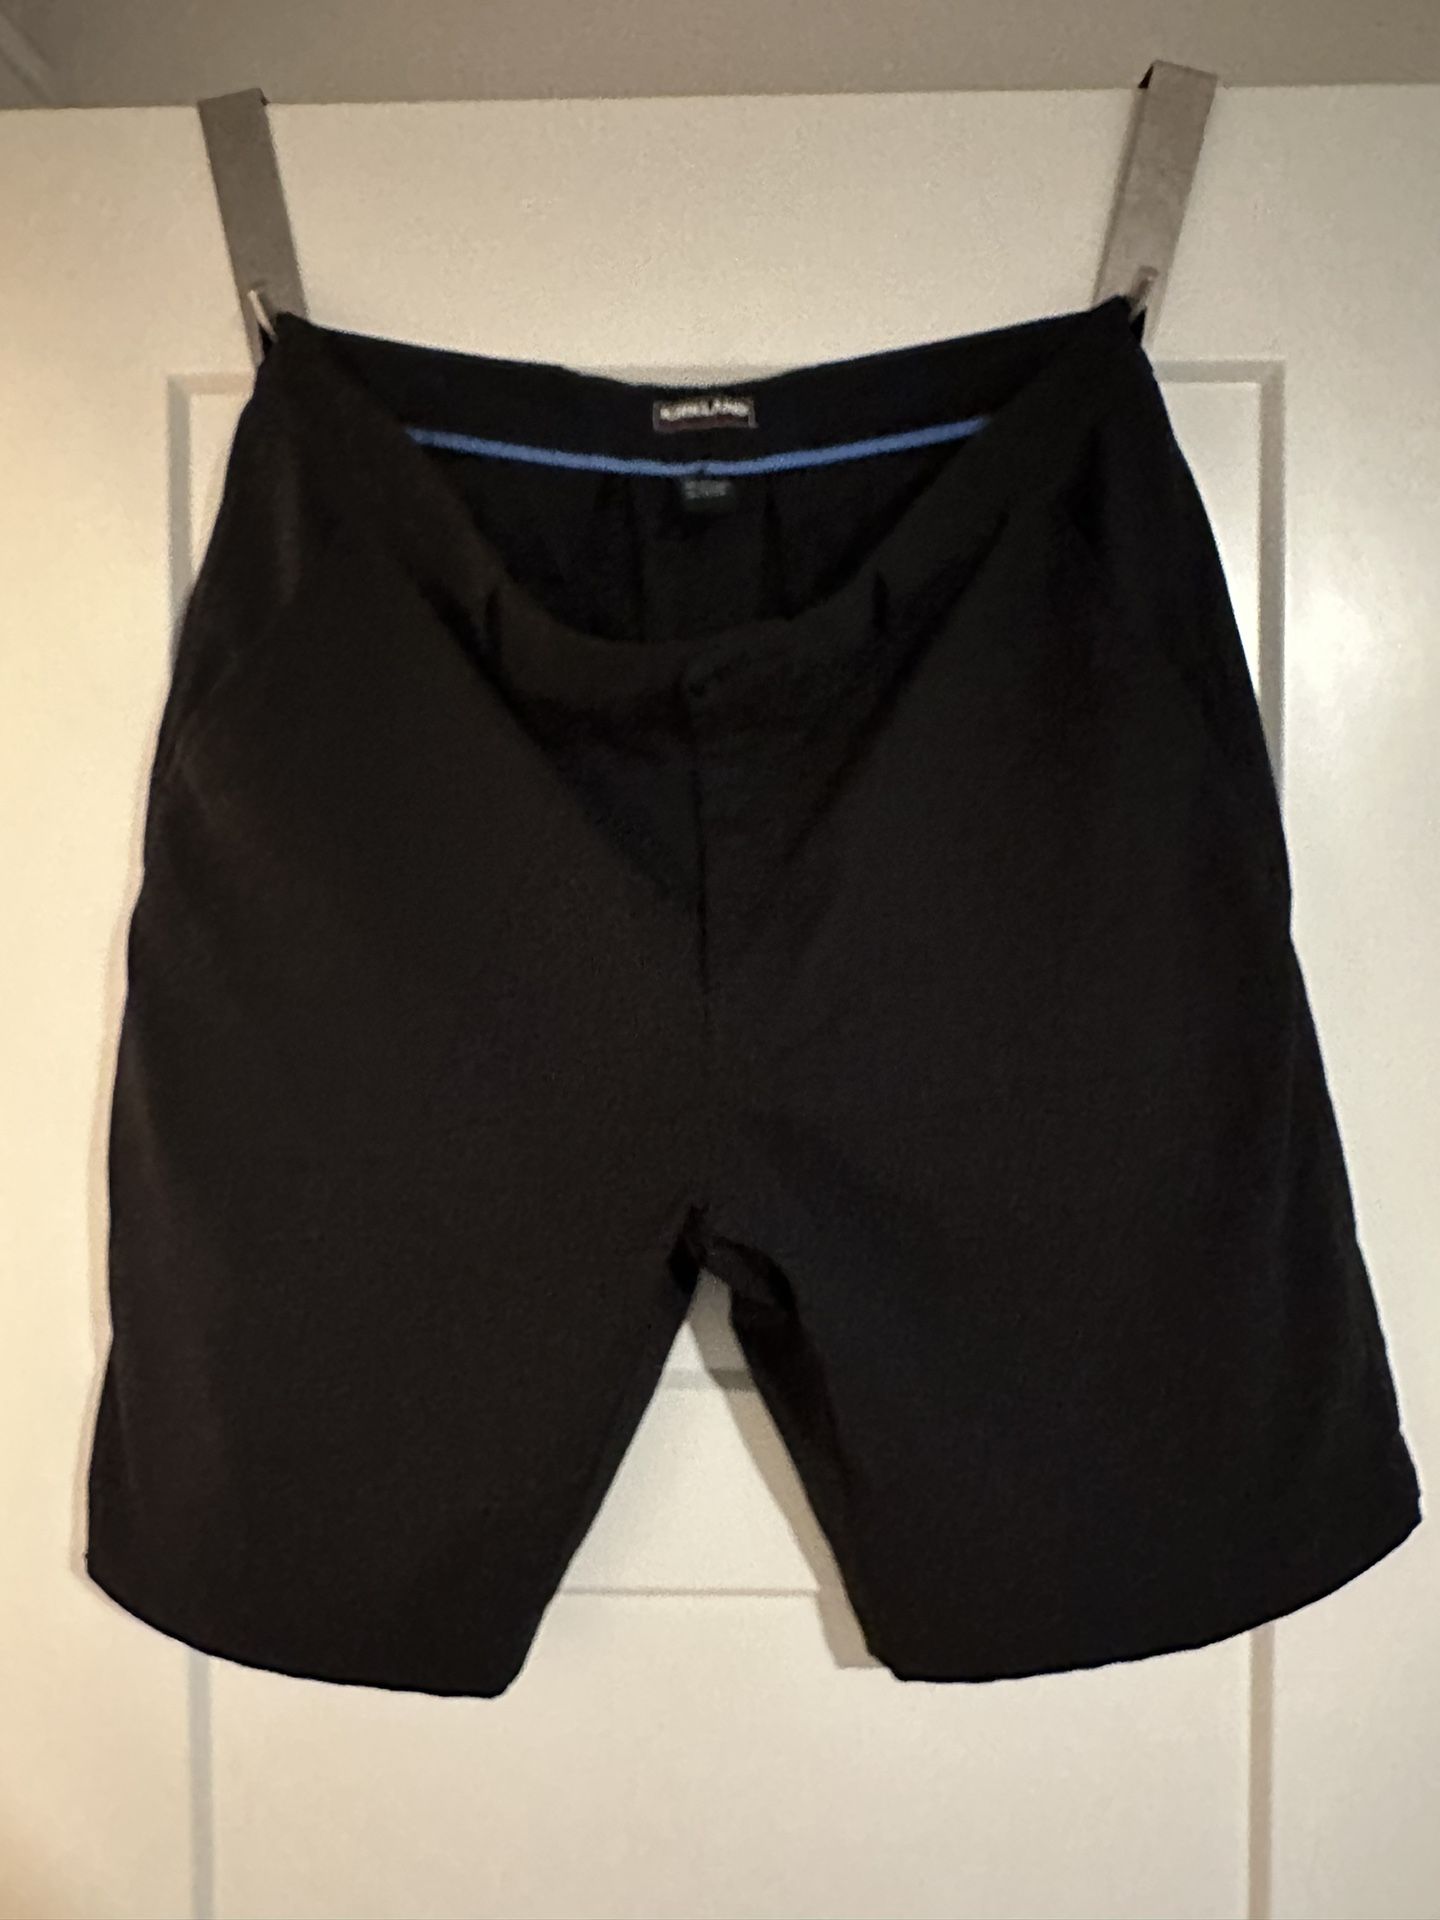 Kirkland Size 36 Black Golf Shorts